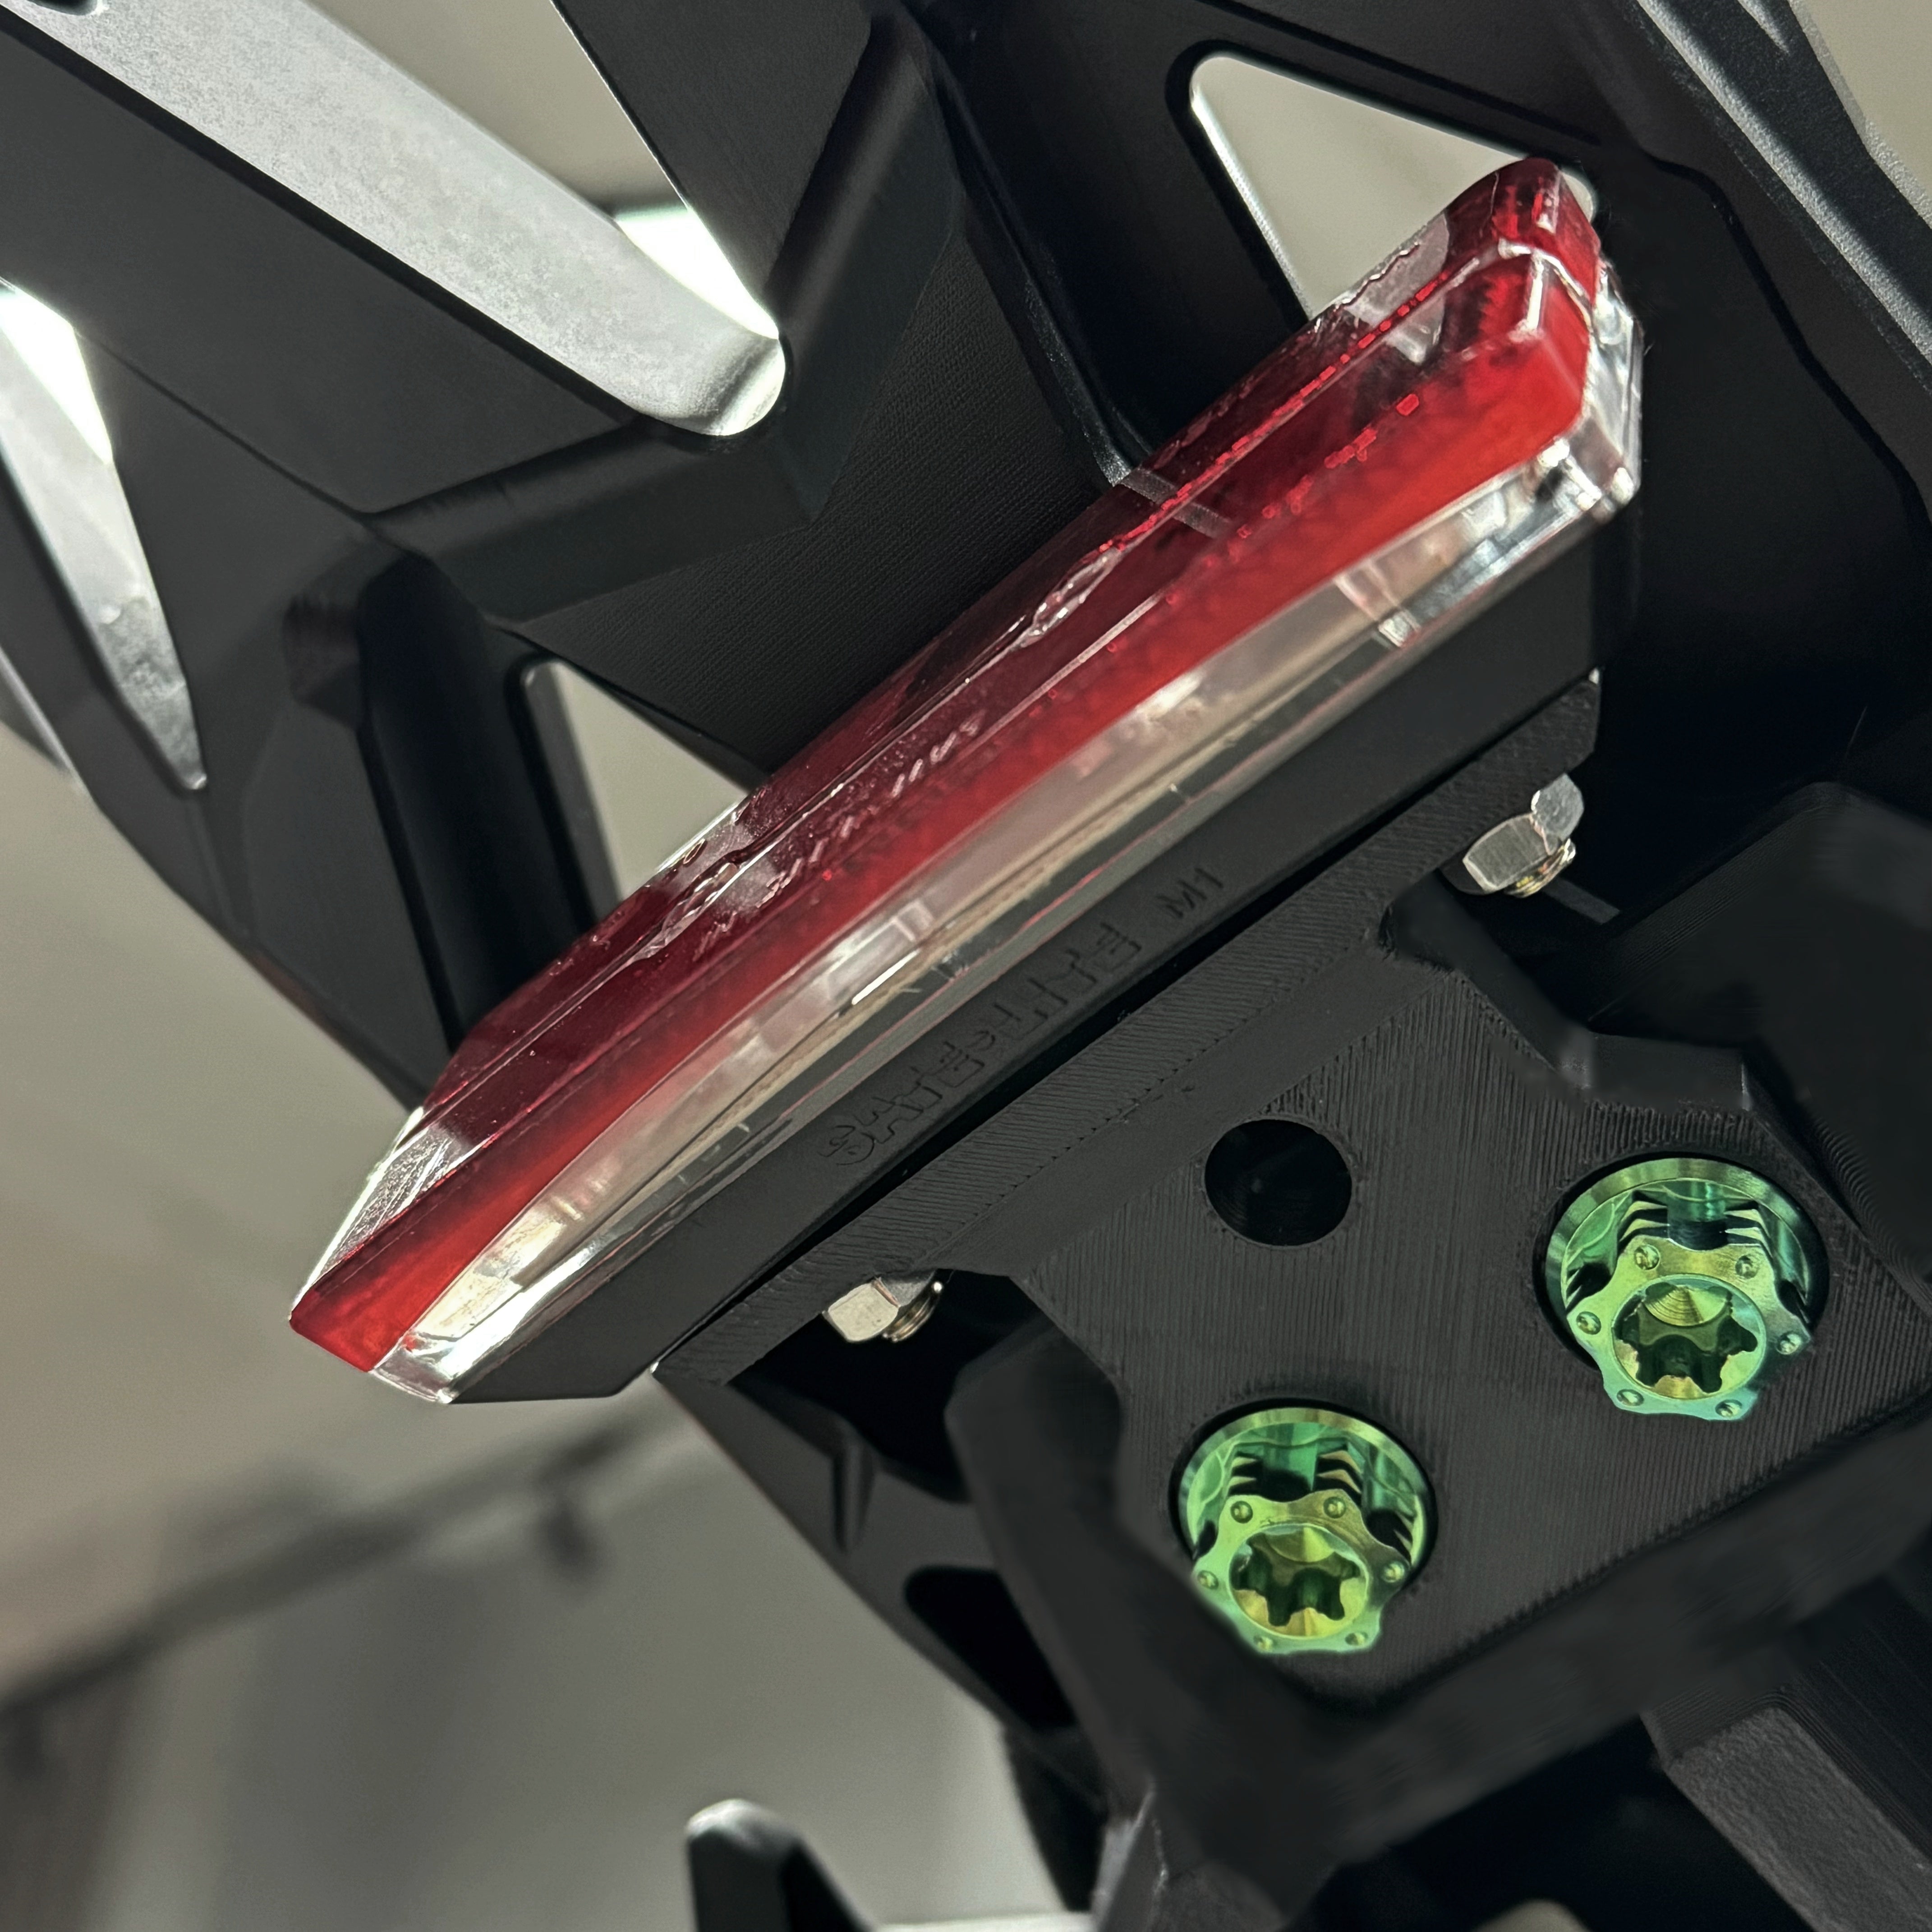 Skrmod Extended Stock Tail Light Adapter - for Sur-Ron LBX Rack Kit